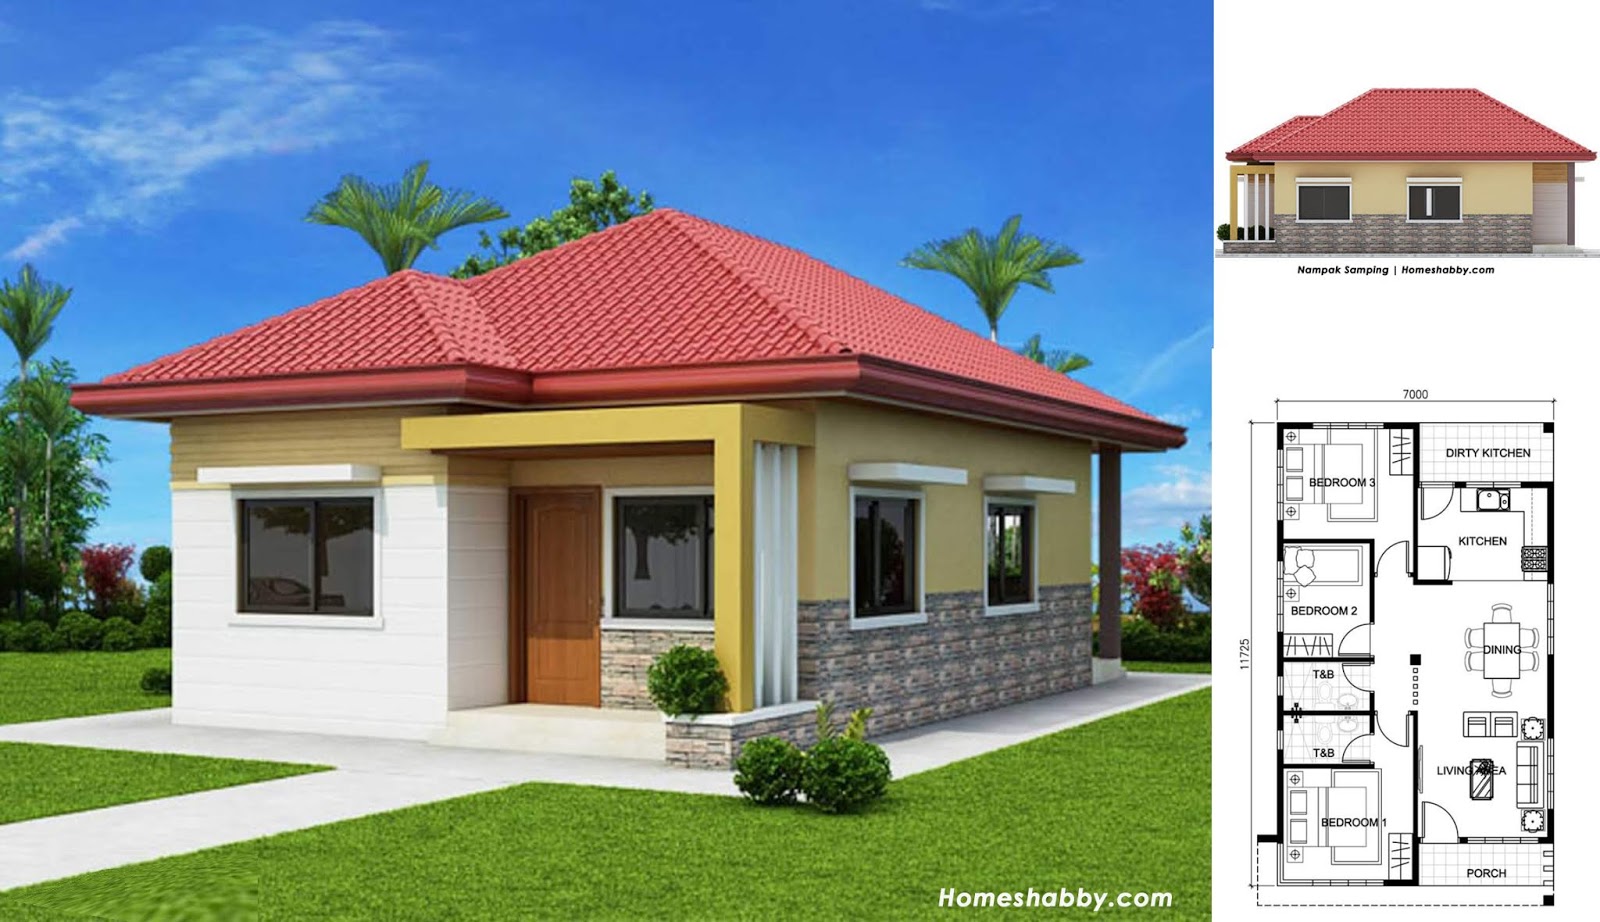 Desain Dan Denah Rumah Pedesaan Modern Minimalis Yang Cantik Dan Bikin Betah Homeshabbycom Design Home Plans